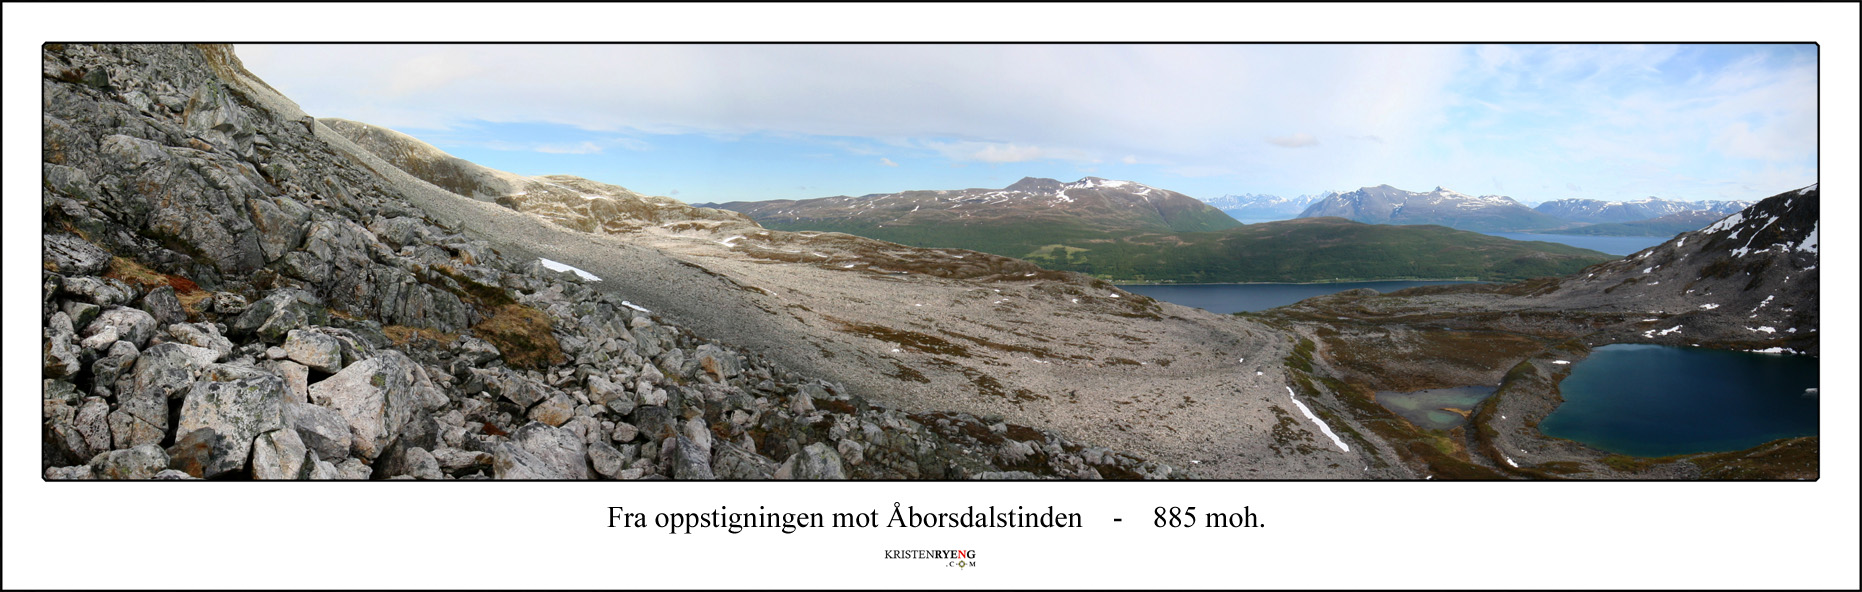 PanoramaAaborsdalstinden1.jpg - Utsikt over Åborsdalen og Åborselvvatnet på vei opp mot Åborsdalstinden.